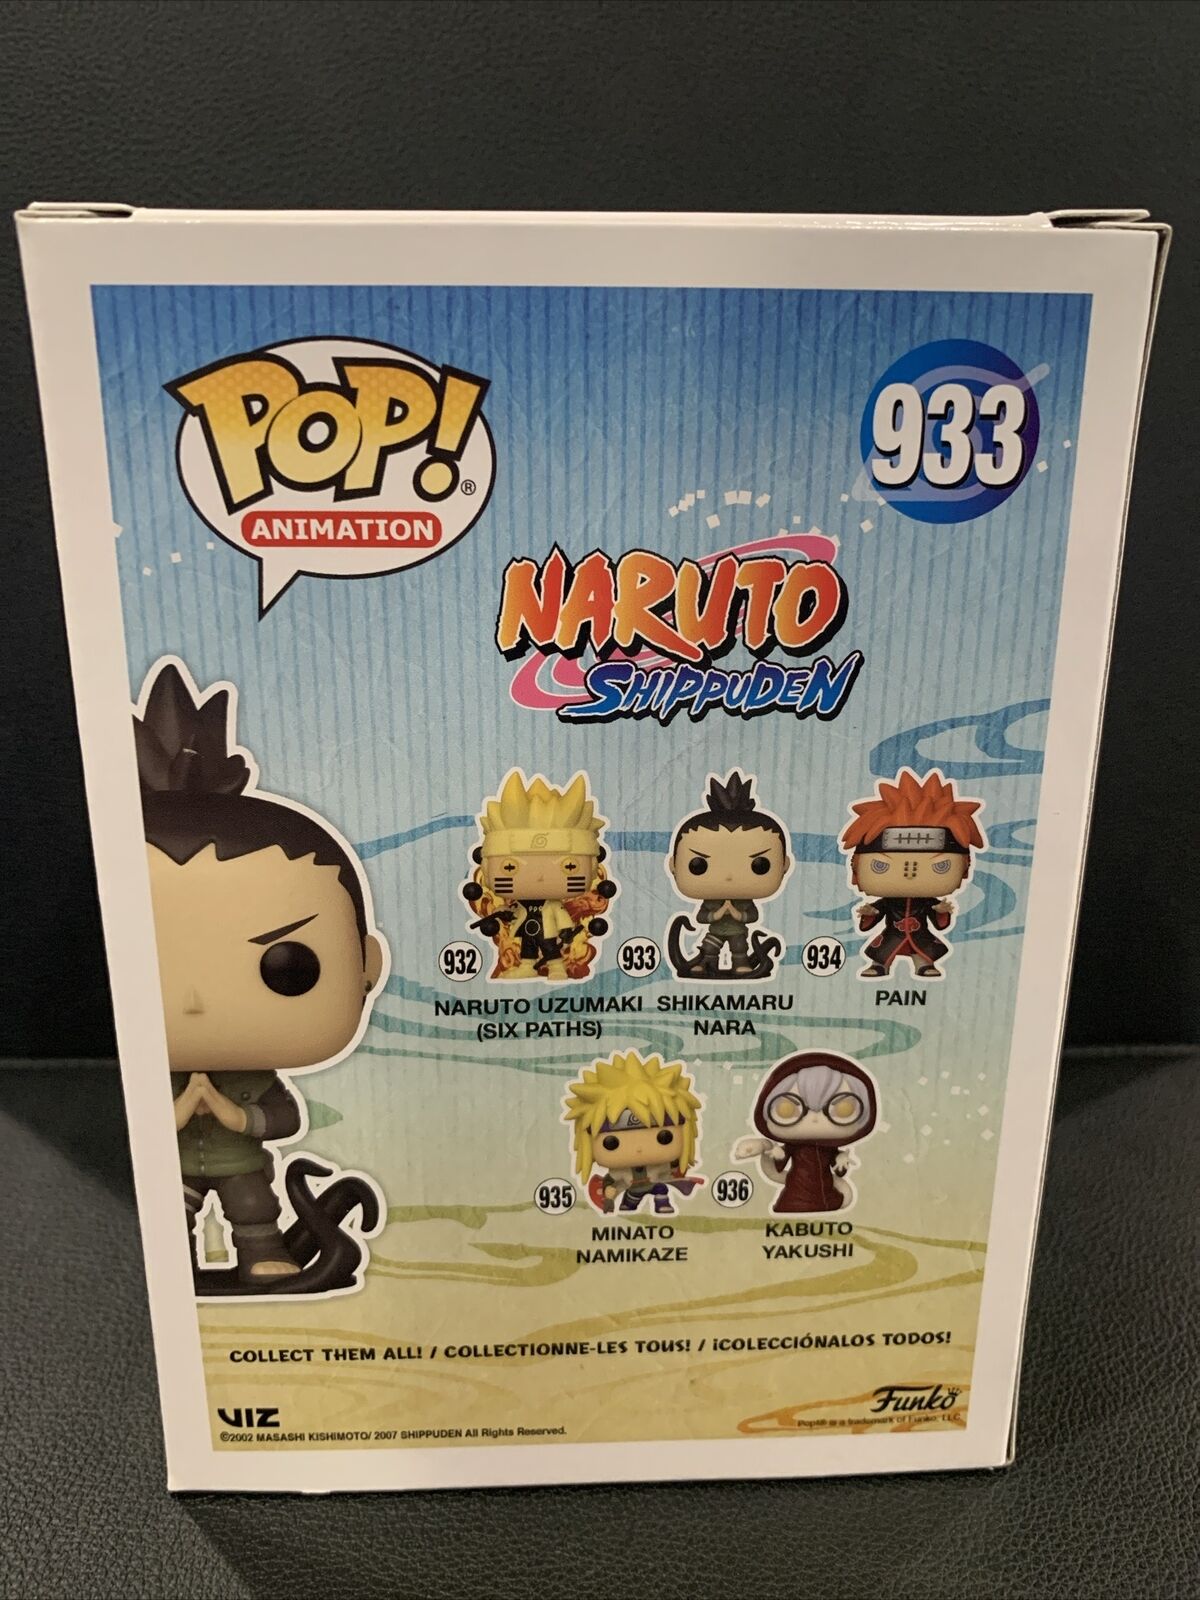 Funko PoP! Naruto Shikamaru Nara 933